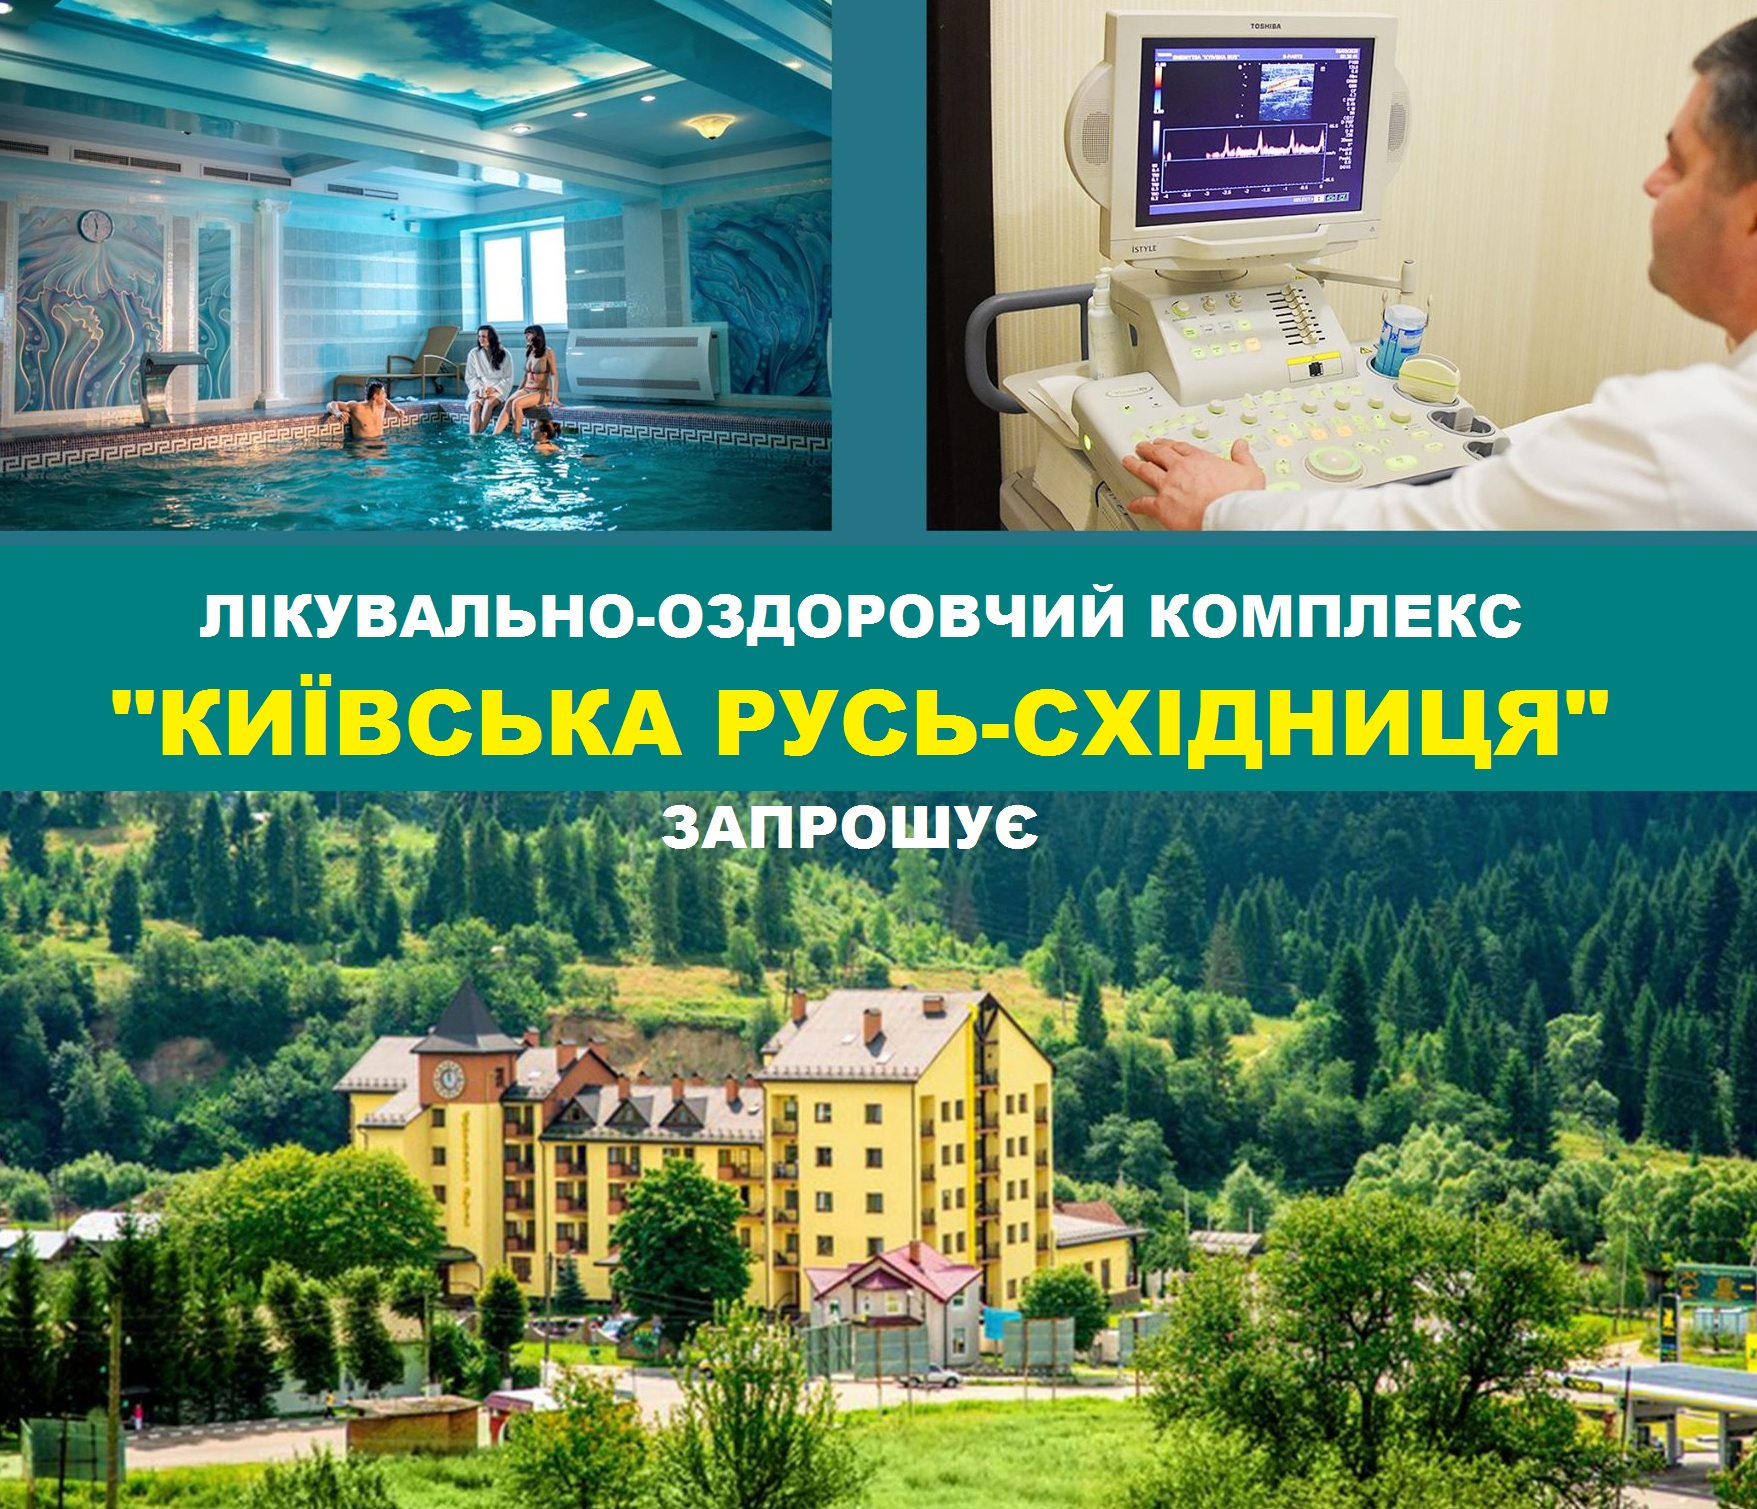 Лікувально-оздоровчий комплекс «Київська Русь-Східниця» запрошує